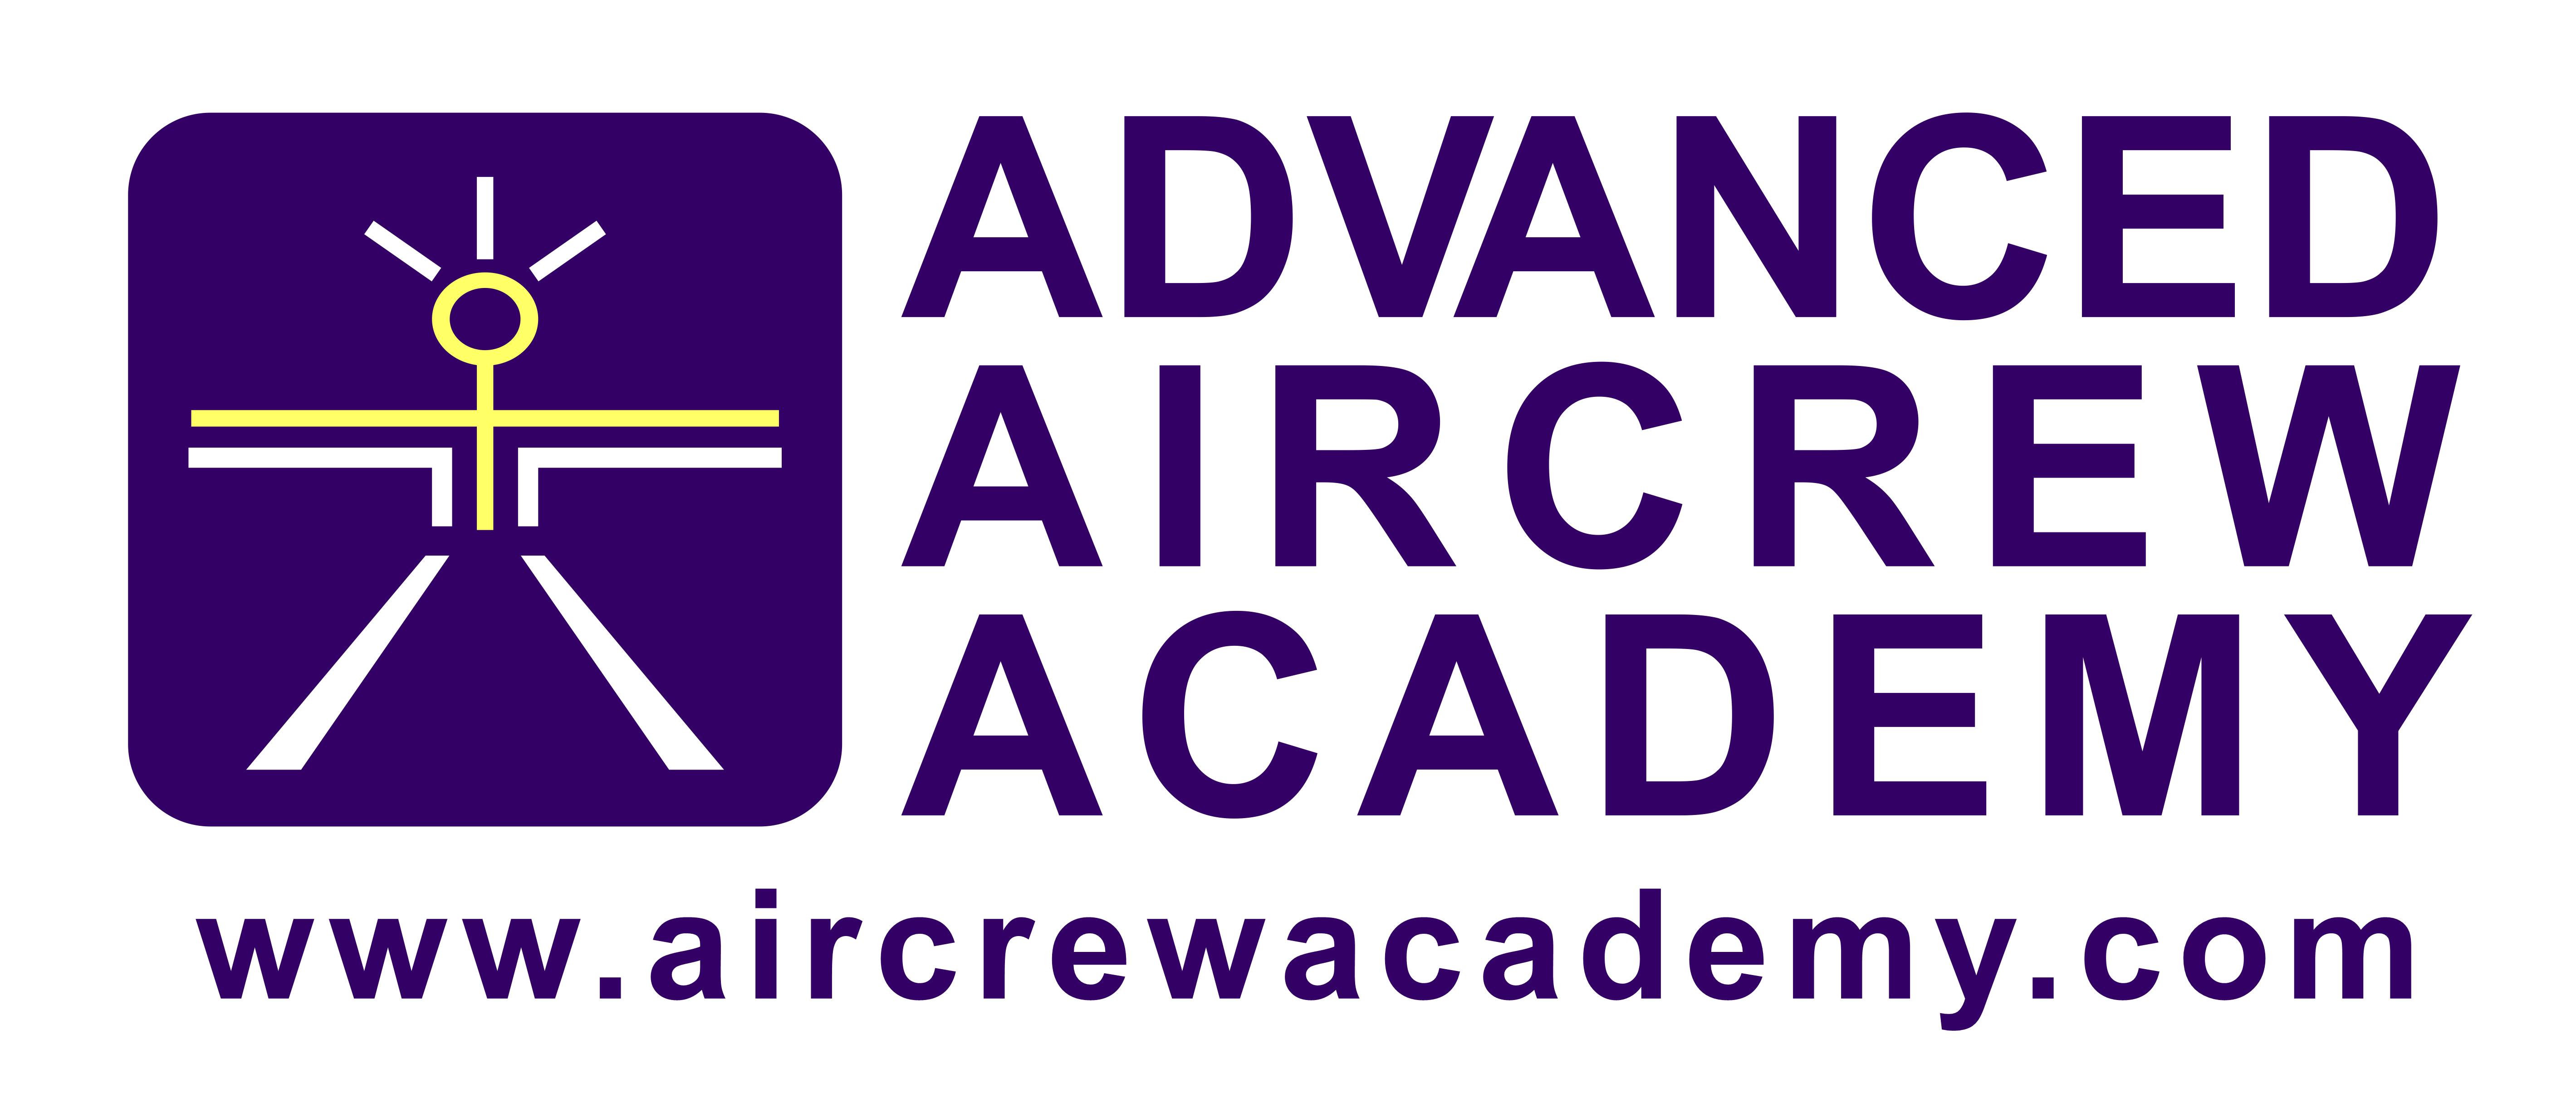 Advanced Aircrew Academy